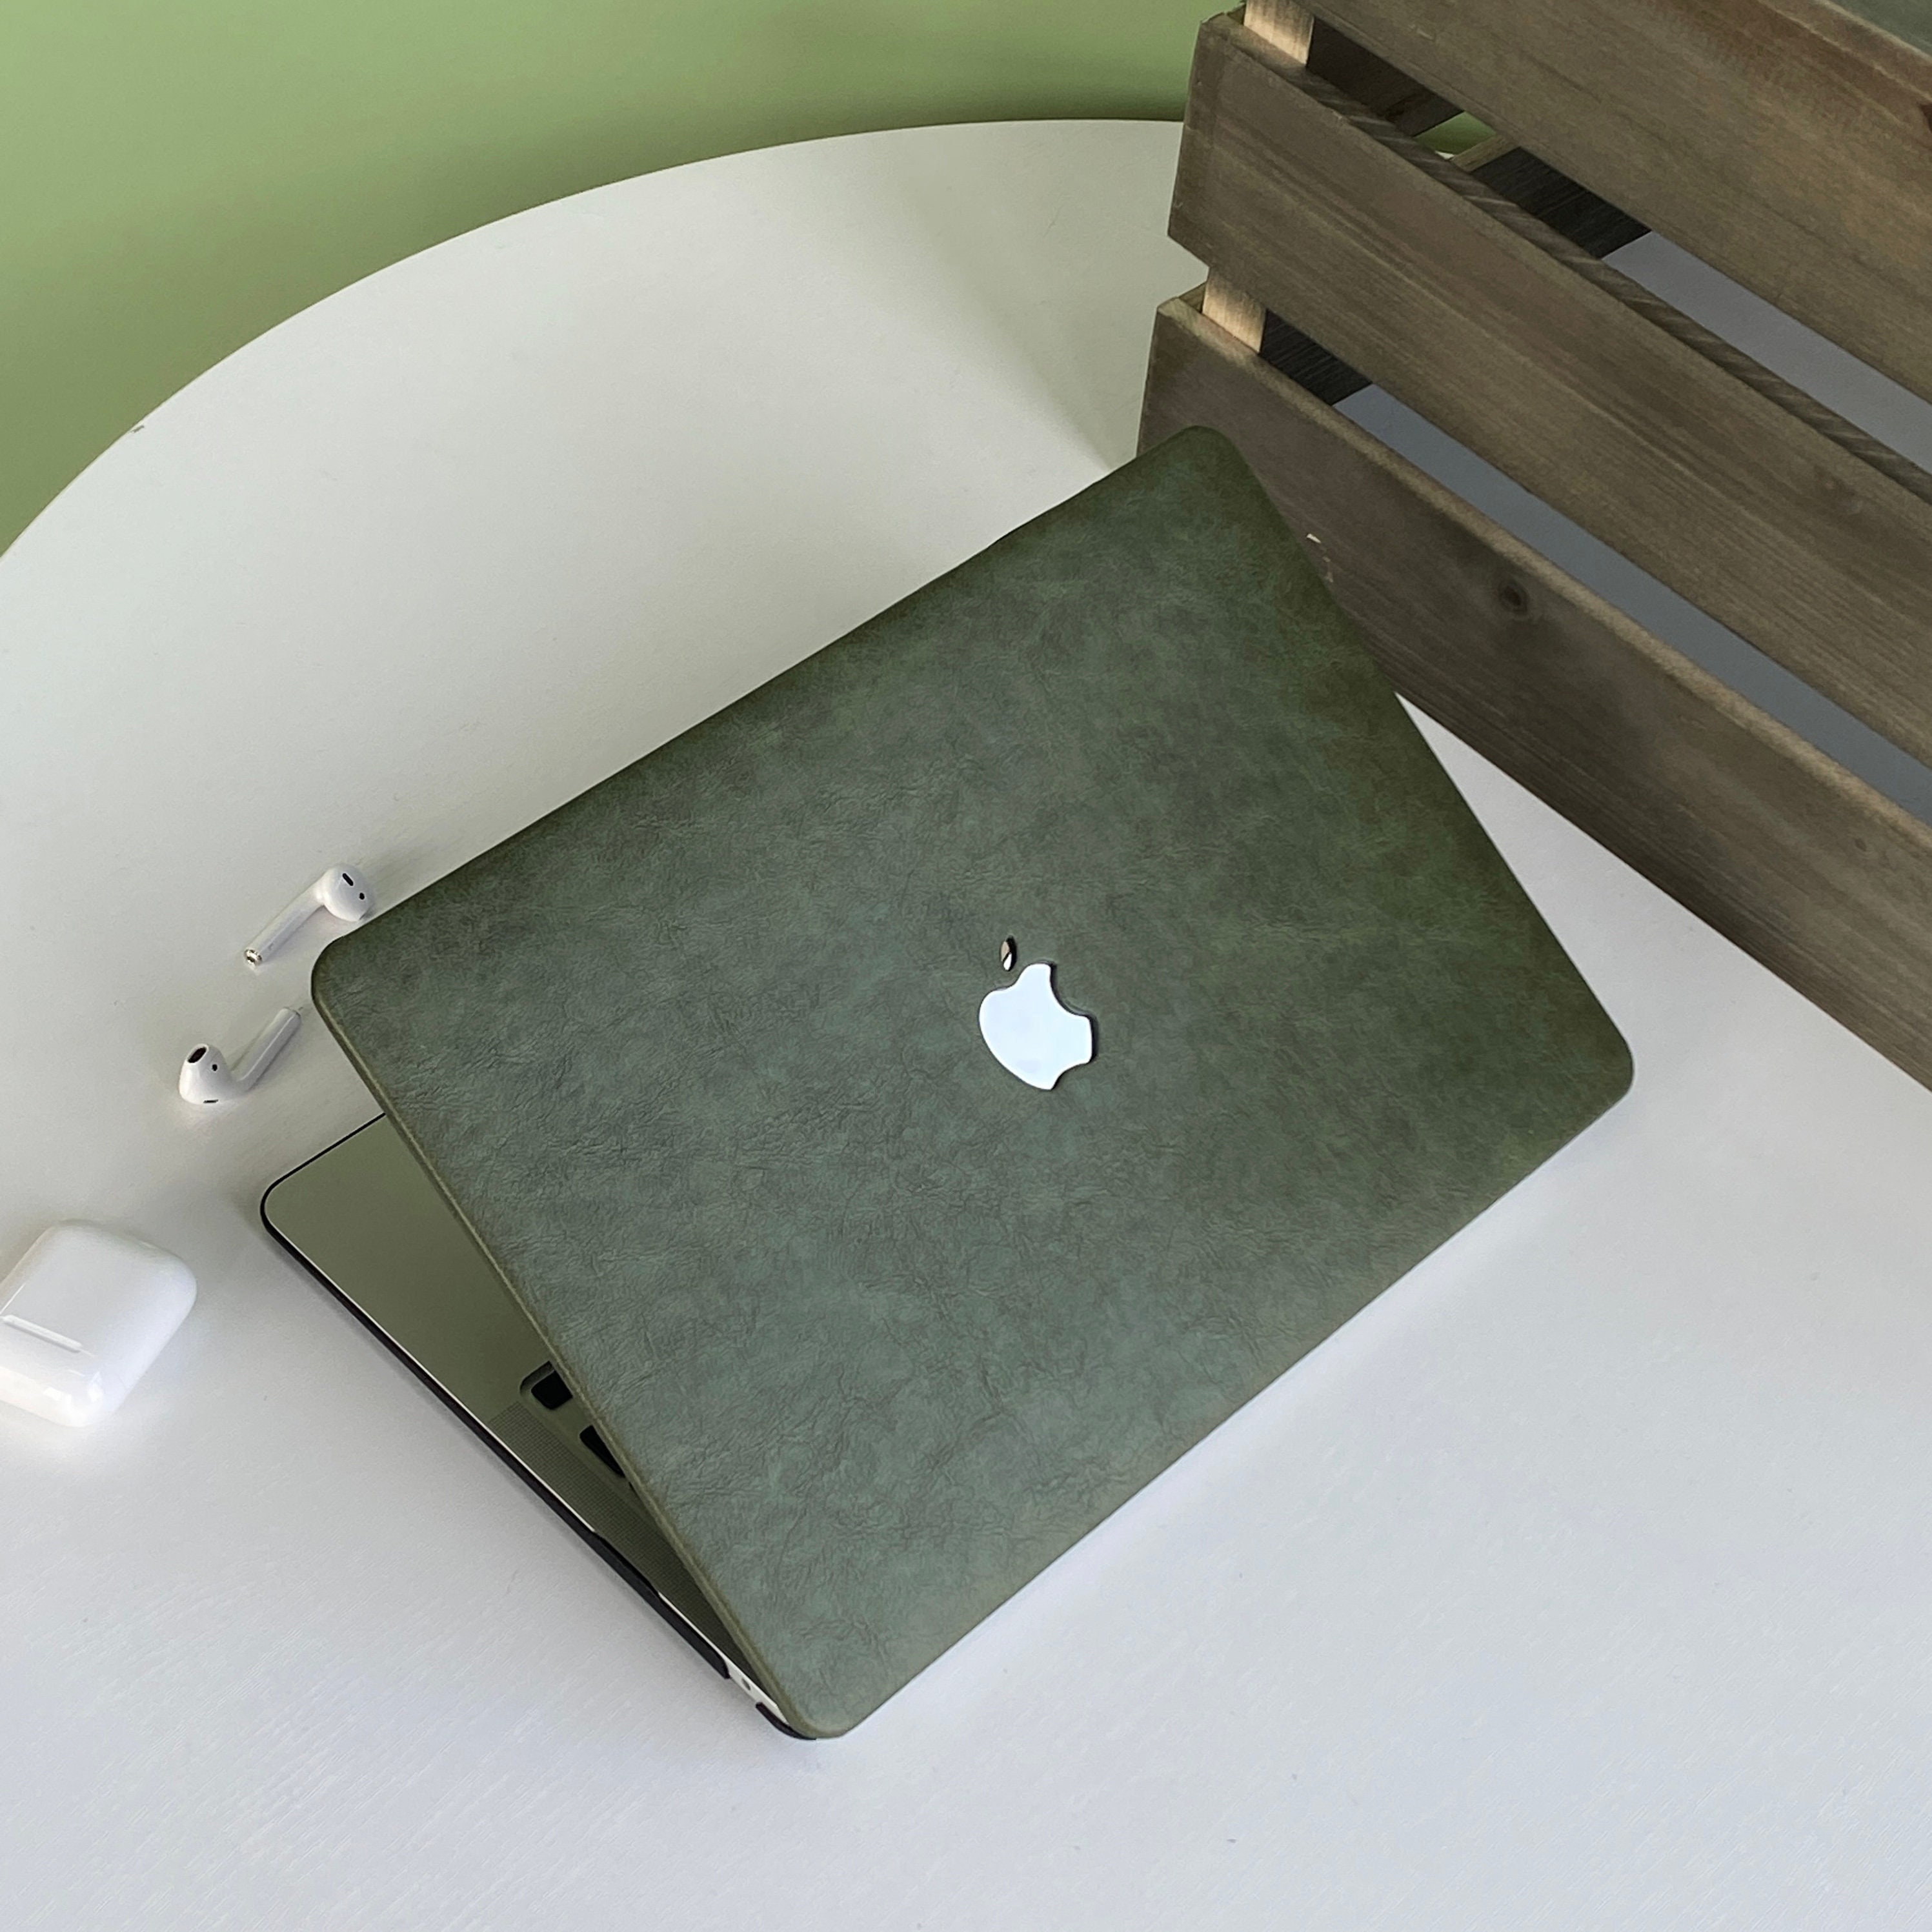 NAT - Housse MacBook Pro 13 / Air 13 en cuir patiné - Chocolat